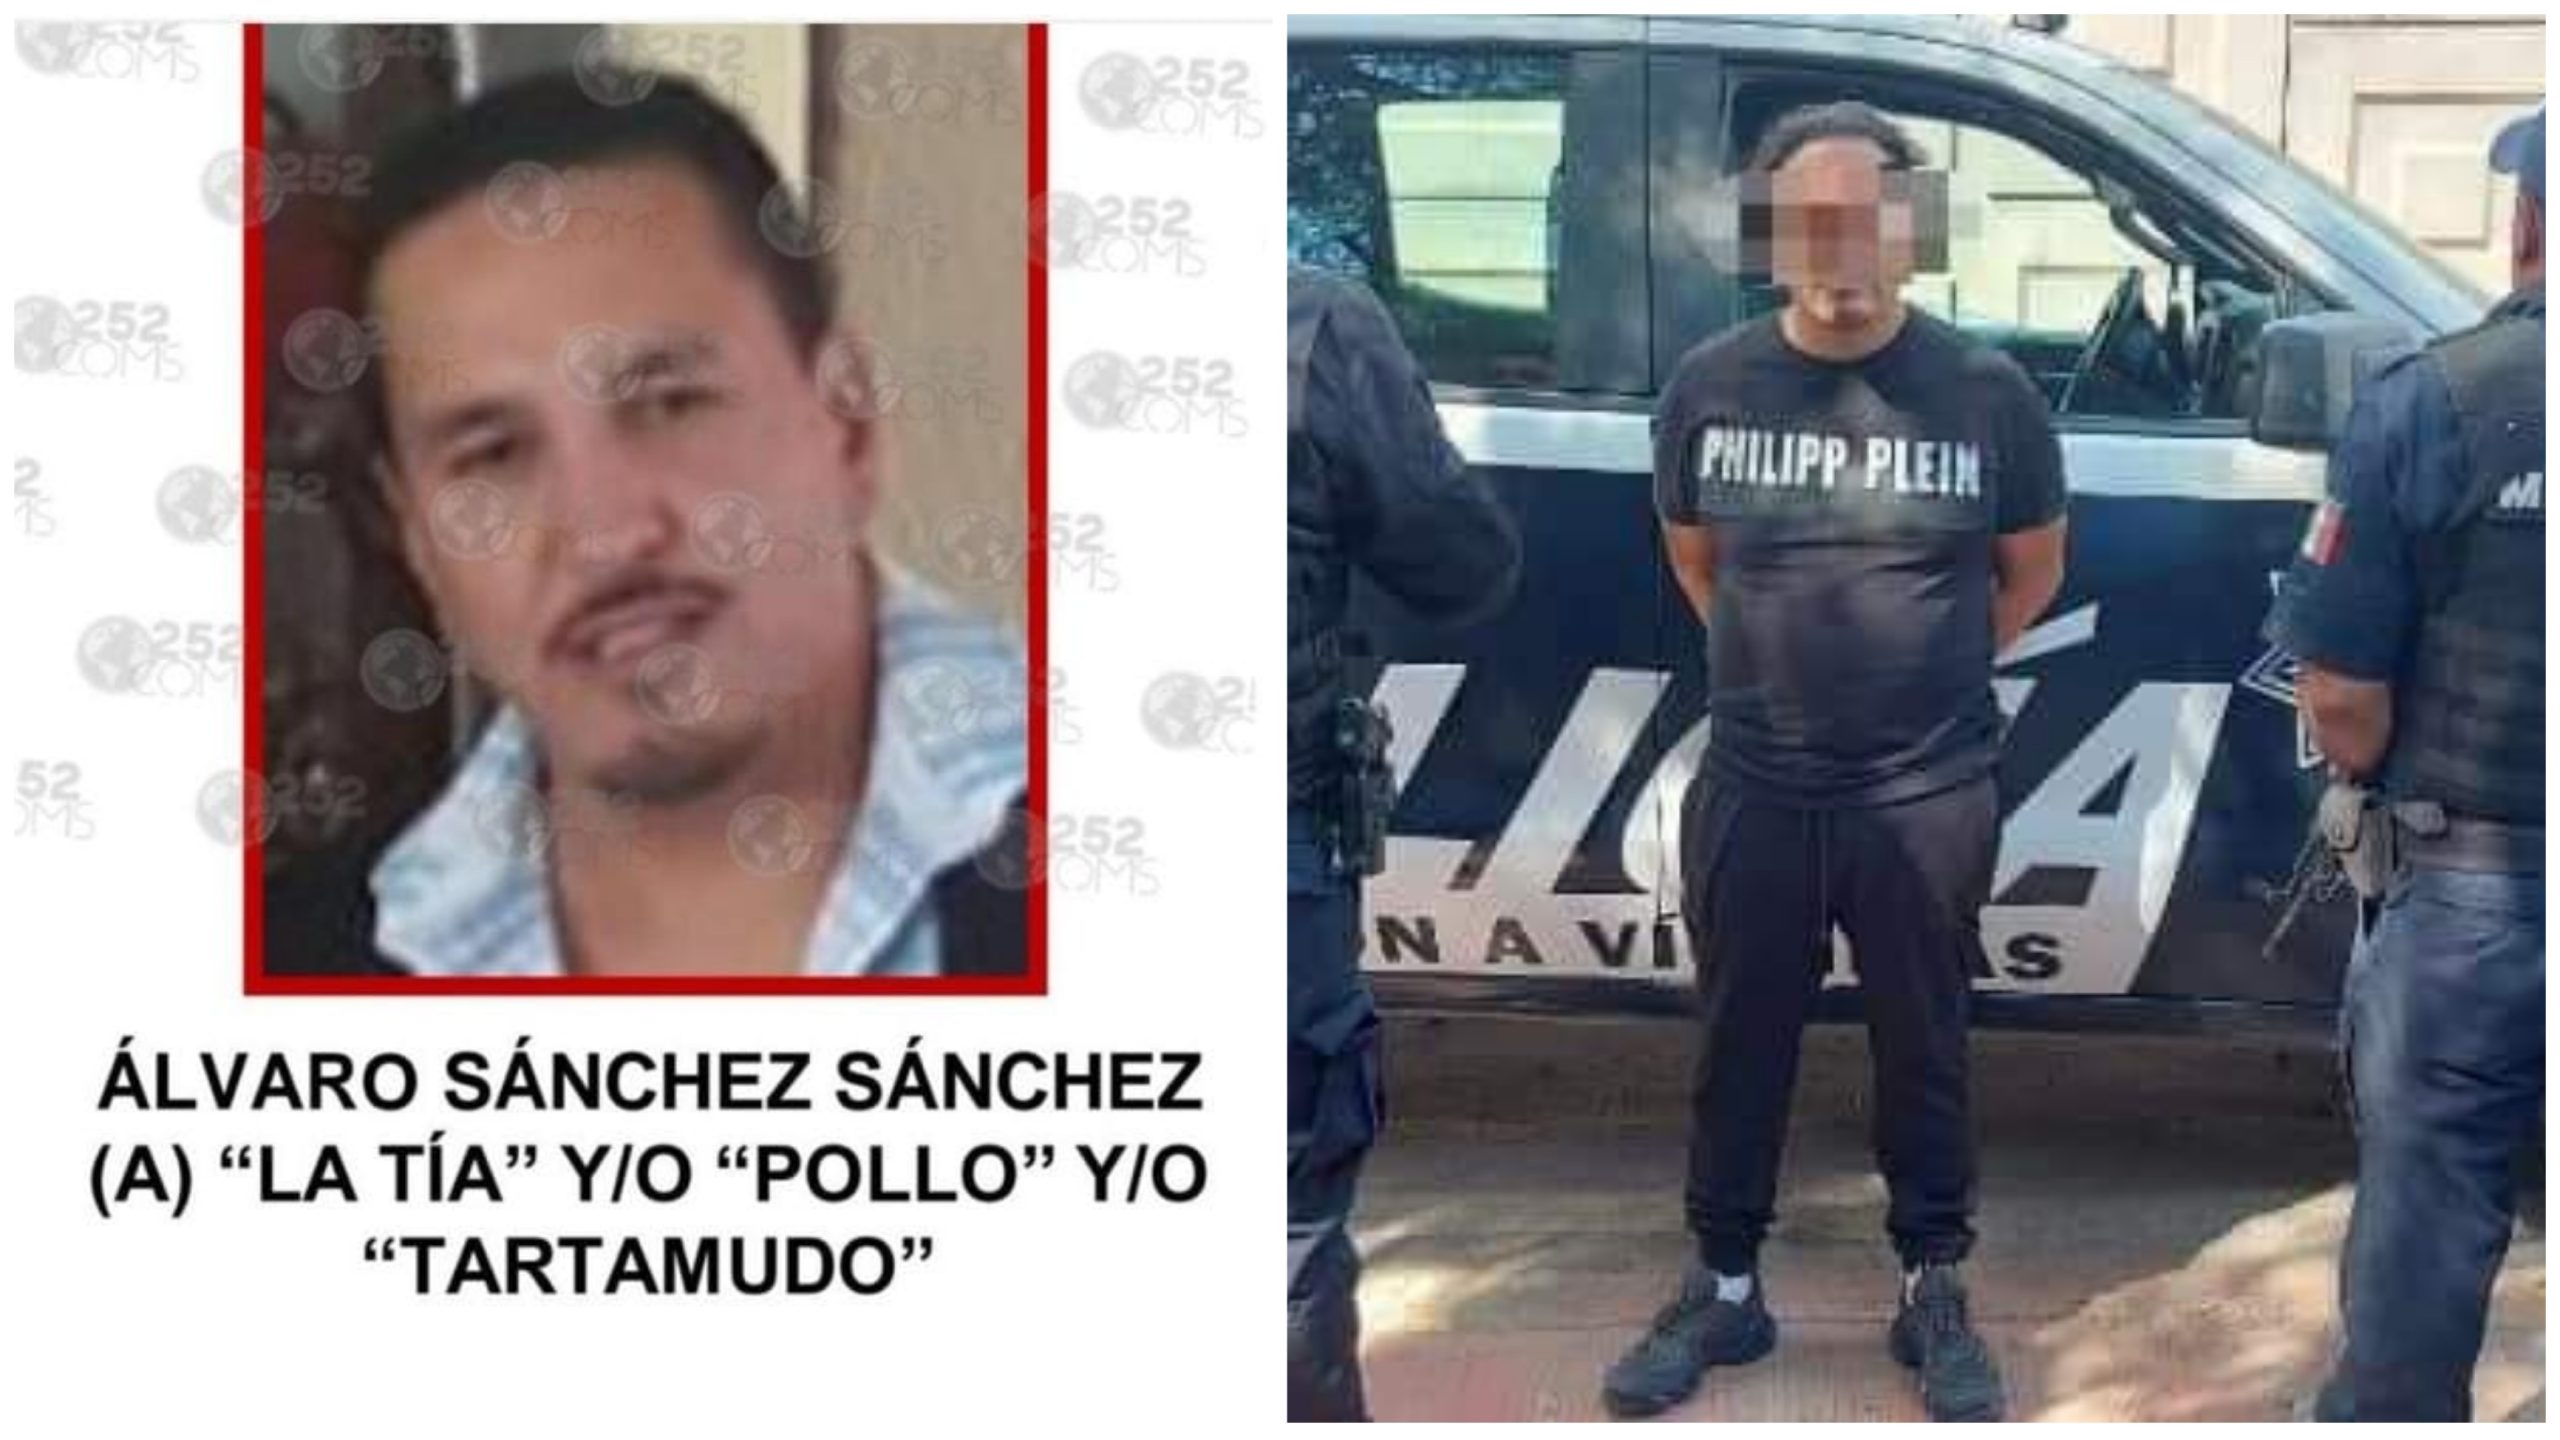 Alvaro Sánchez Sánchez Alias “La Tía, Pollo o Tartamudo” capo ejecutado en Tequisquipan